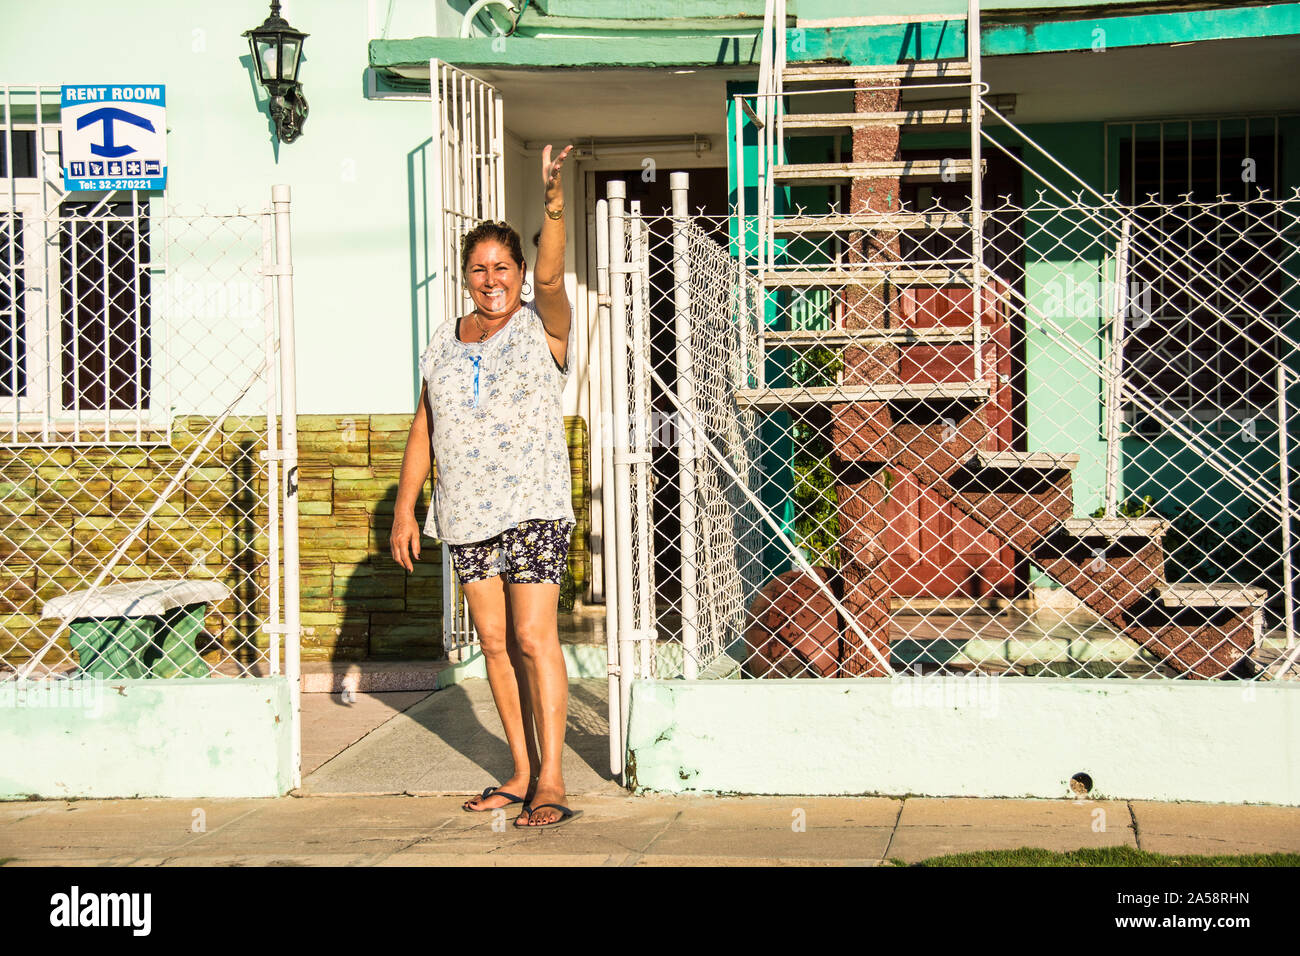 Une femme devant sa maison. Signe derrière elle annonçant que les chambres sont à louer; Camaguey, Cuba Banque D'Images